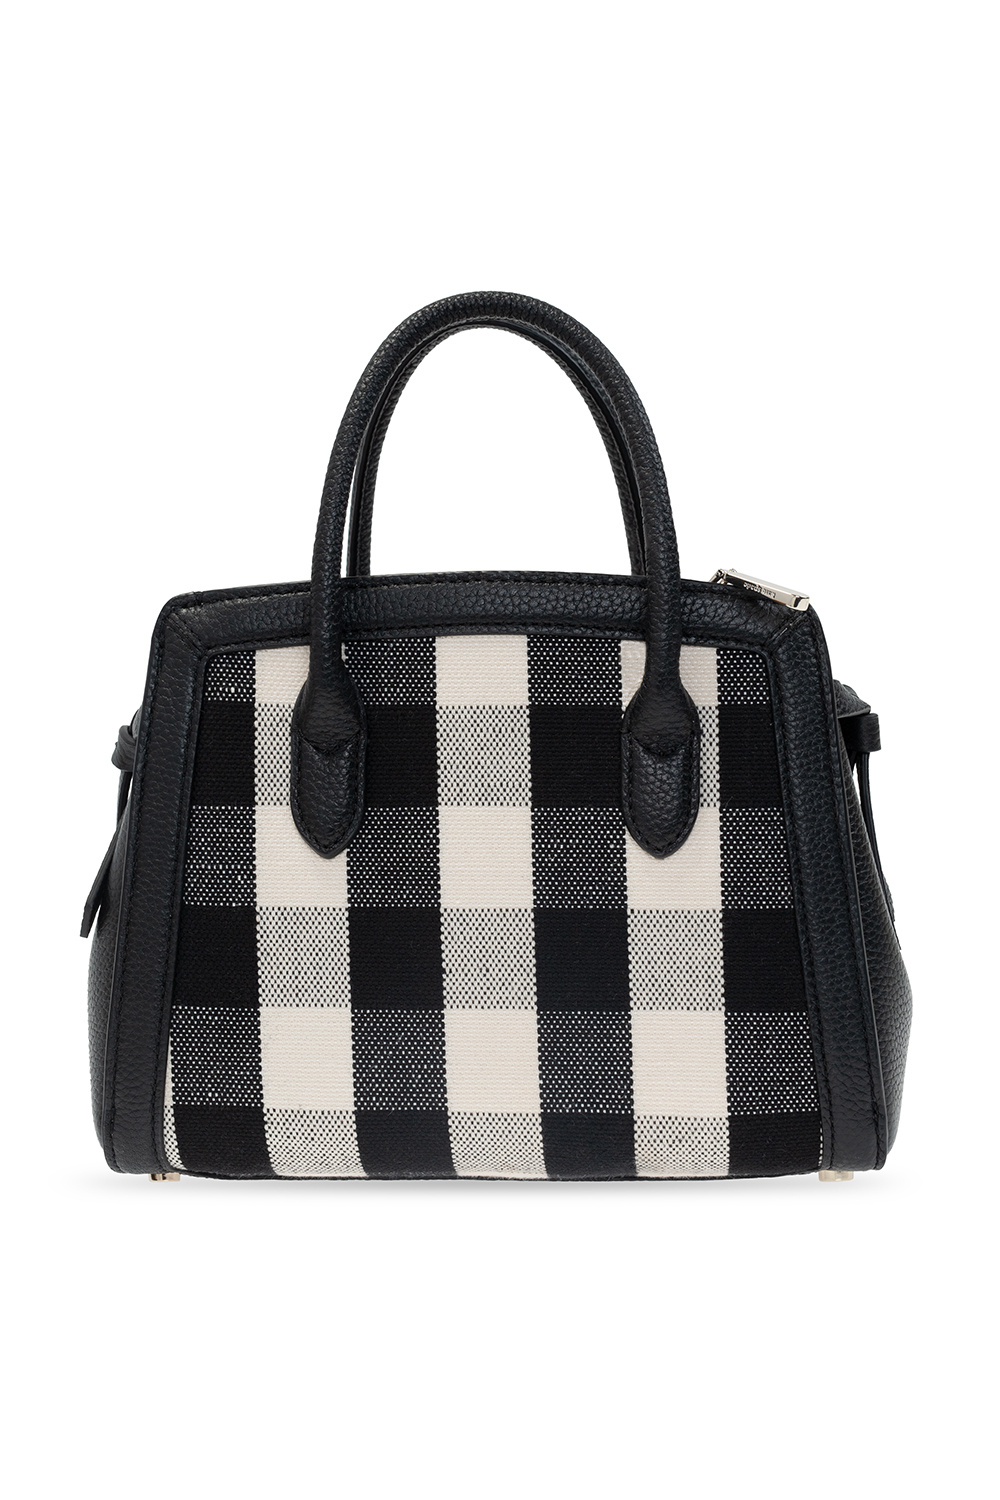 Kate Spade 'Knott' shoulder bag | Women's Bags | IetpShops | Celine 16  medium model shoulder bag in burgundy leather